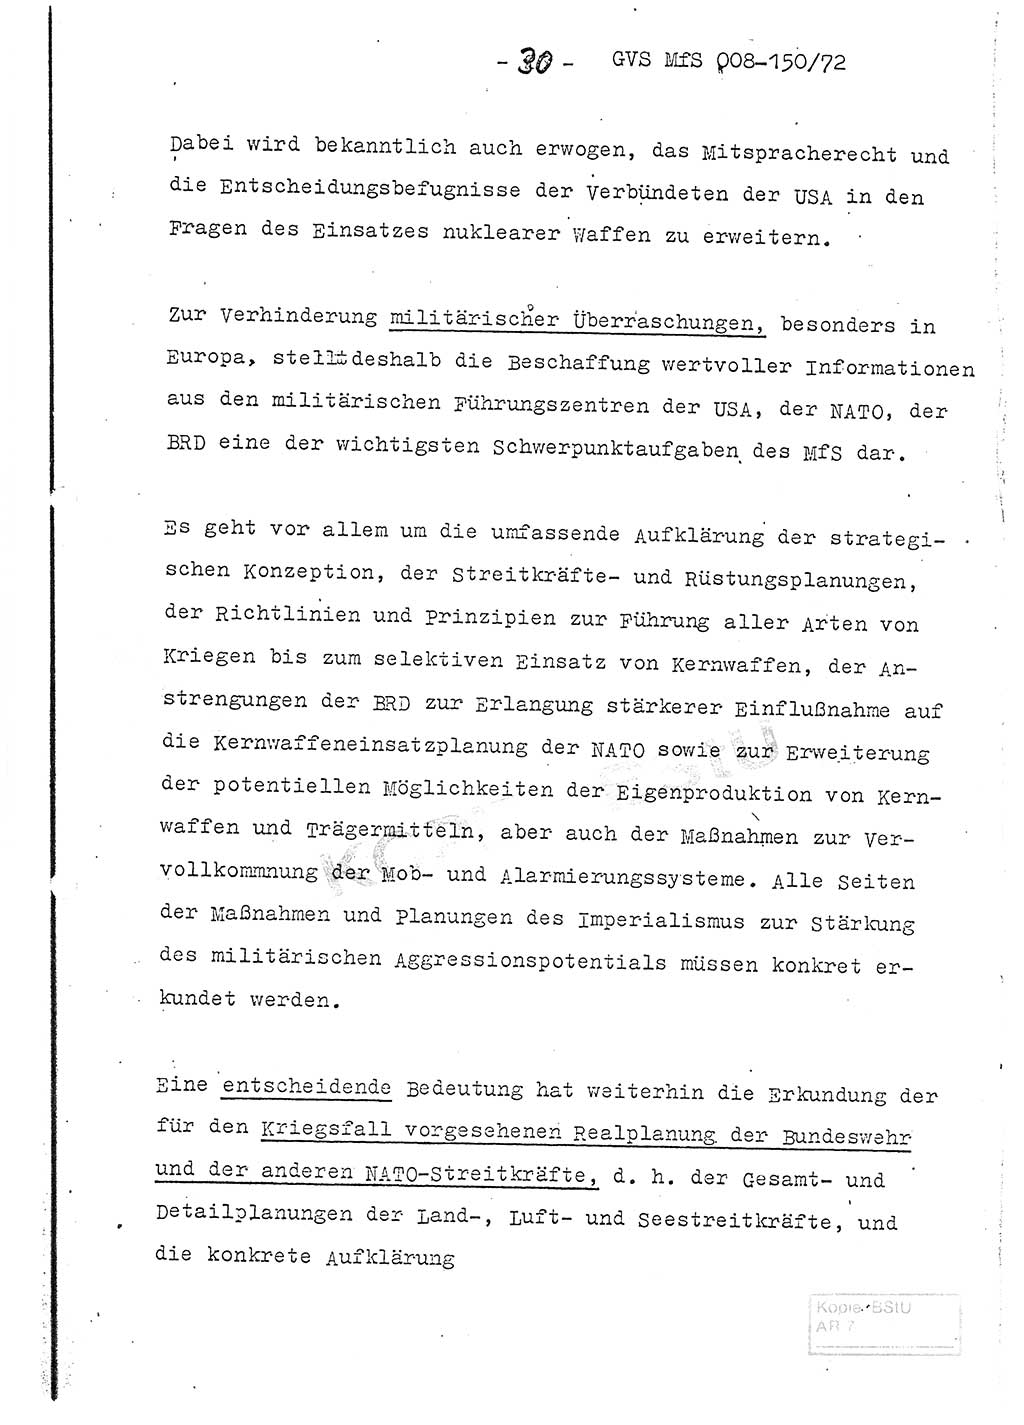 Referat (Entwurf) des Genossen Minister (Generaloberst Erich Mielke) auf der Dienstkonferenz 1972, Ministerium für Staatssicherheit (MfS) [Deutsche Demokratische Republik (DDR)], Der Minister, Geheime Verschlußsache (GVS) 008-150/72, Berlin 25.2.1972, Seite 30 (Ref. Entw. DK MfS DDR Min. GVS 008-150/72 1972, S. 30)